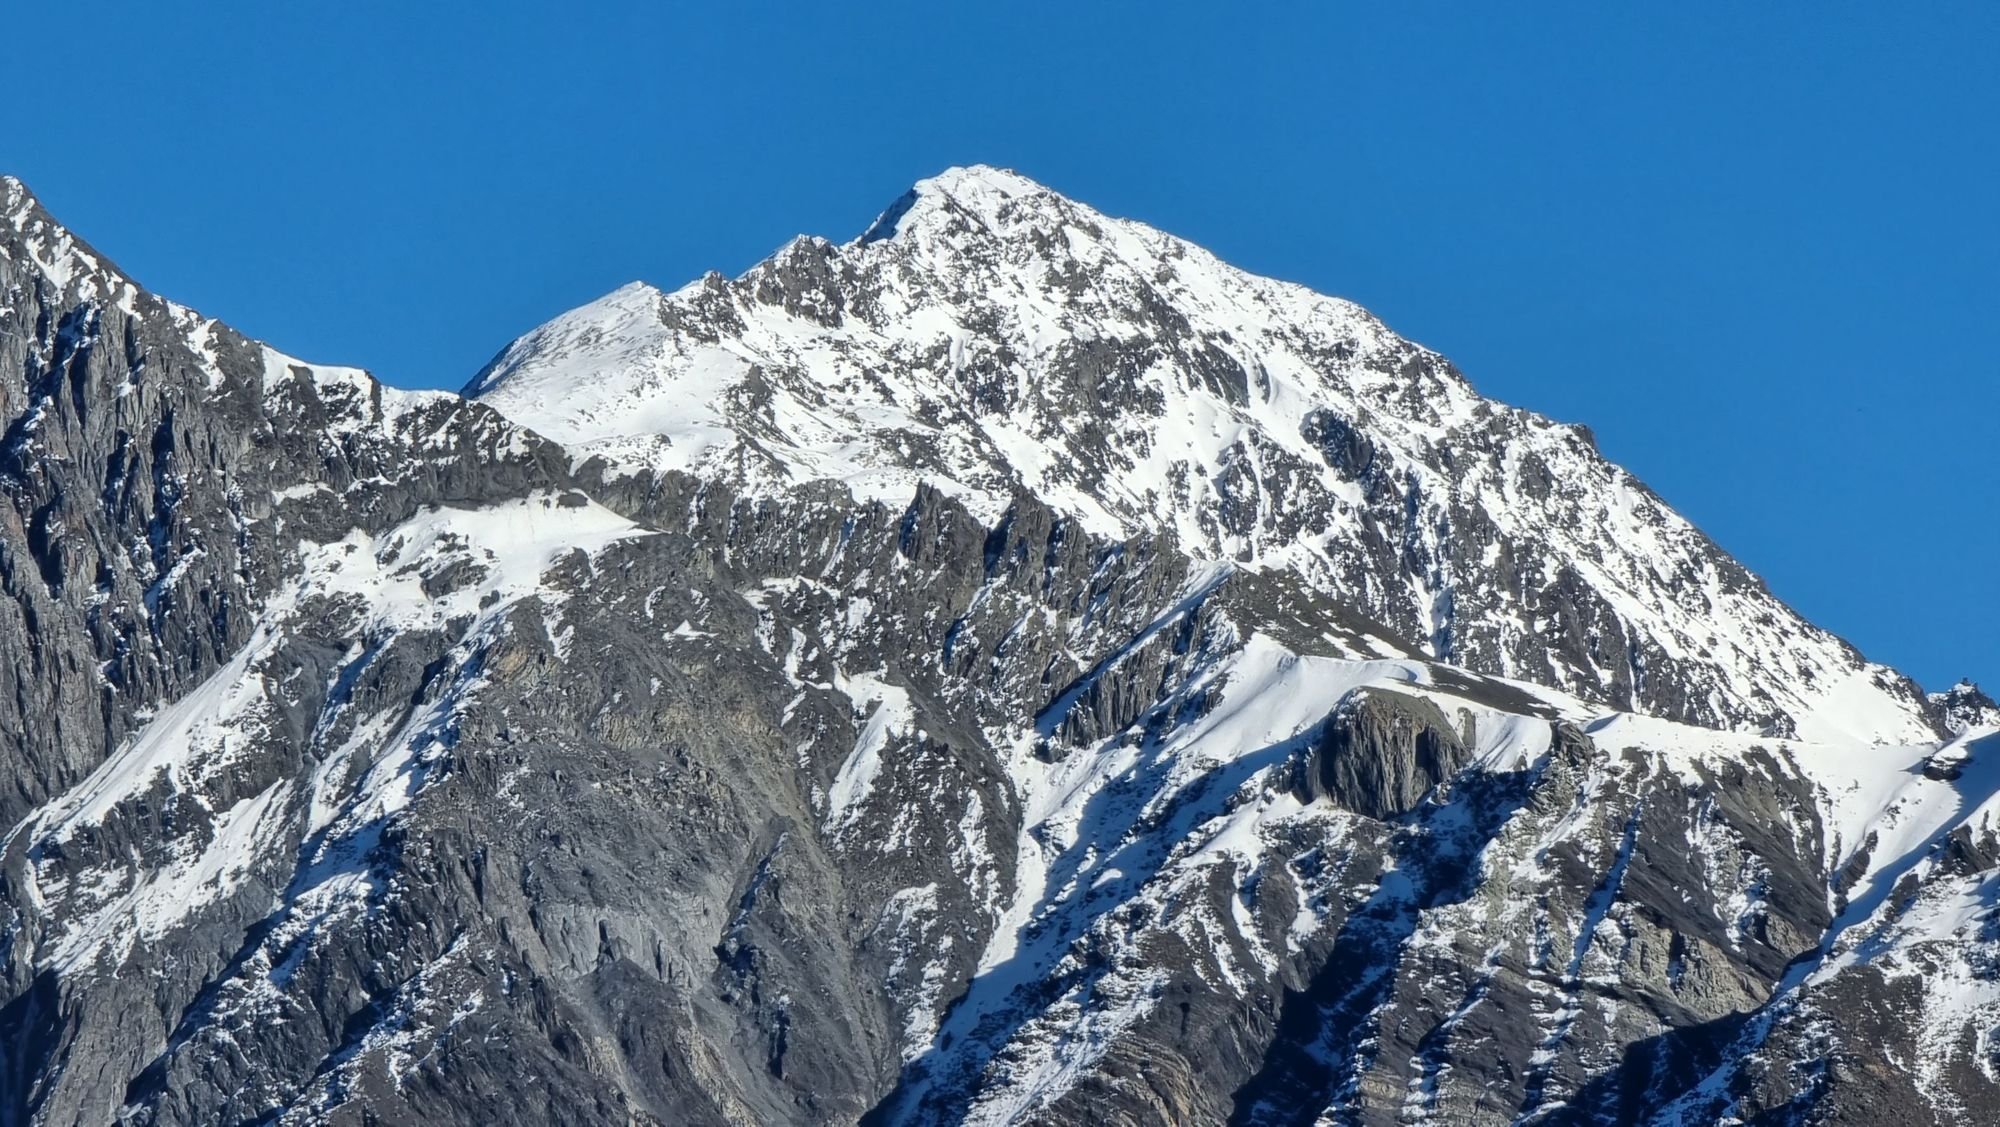 Mount Kazbek in the Caucasus Mountain Range, Georgia